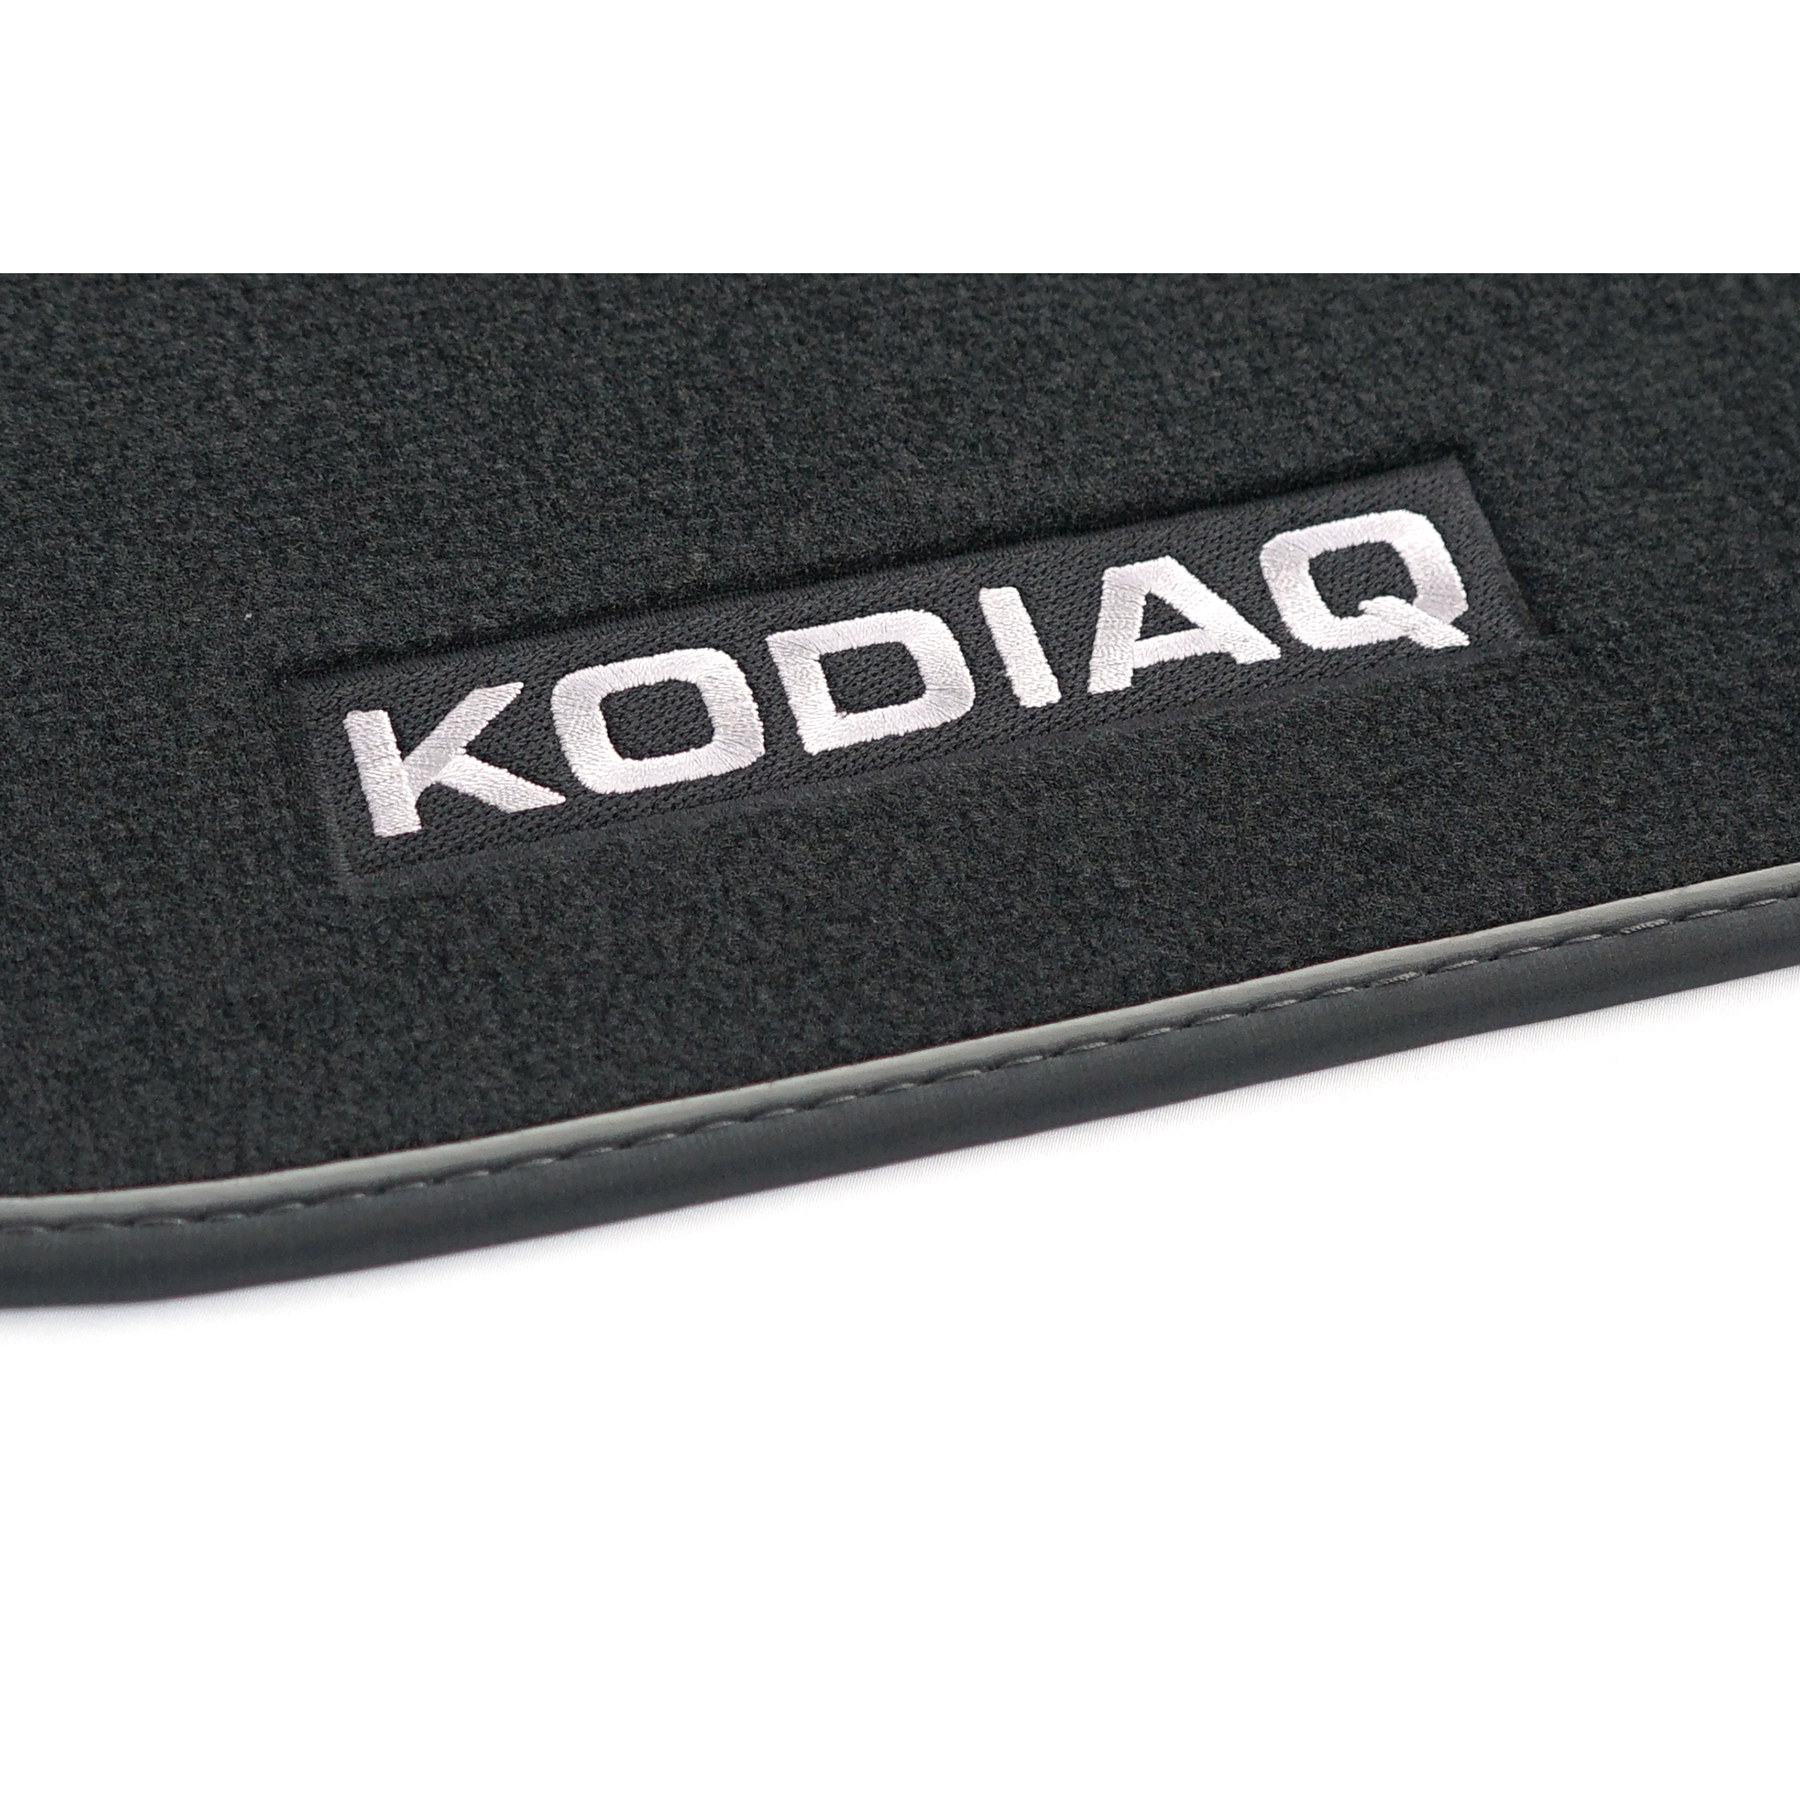 Original AUDI Kodiaq VW 566061270B Textil | Fußmatten Velours Zubehör - Original Prestige ahw-shop und Ersatzteile Stoffmatten Skoda